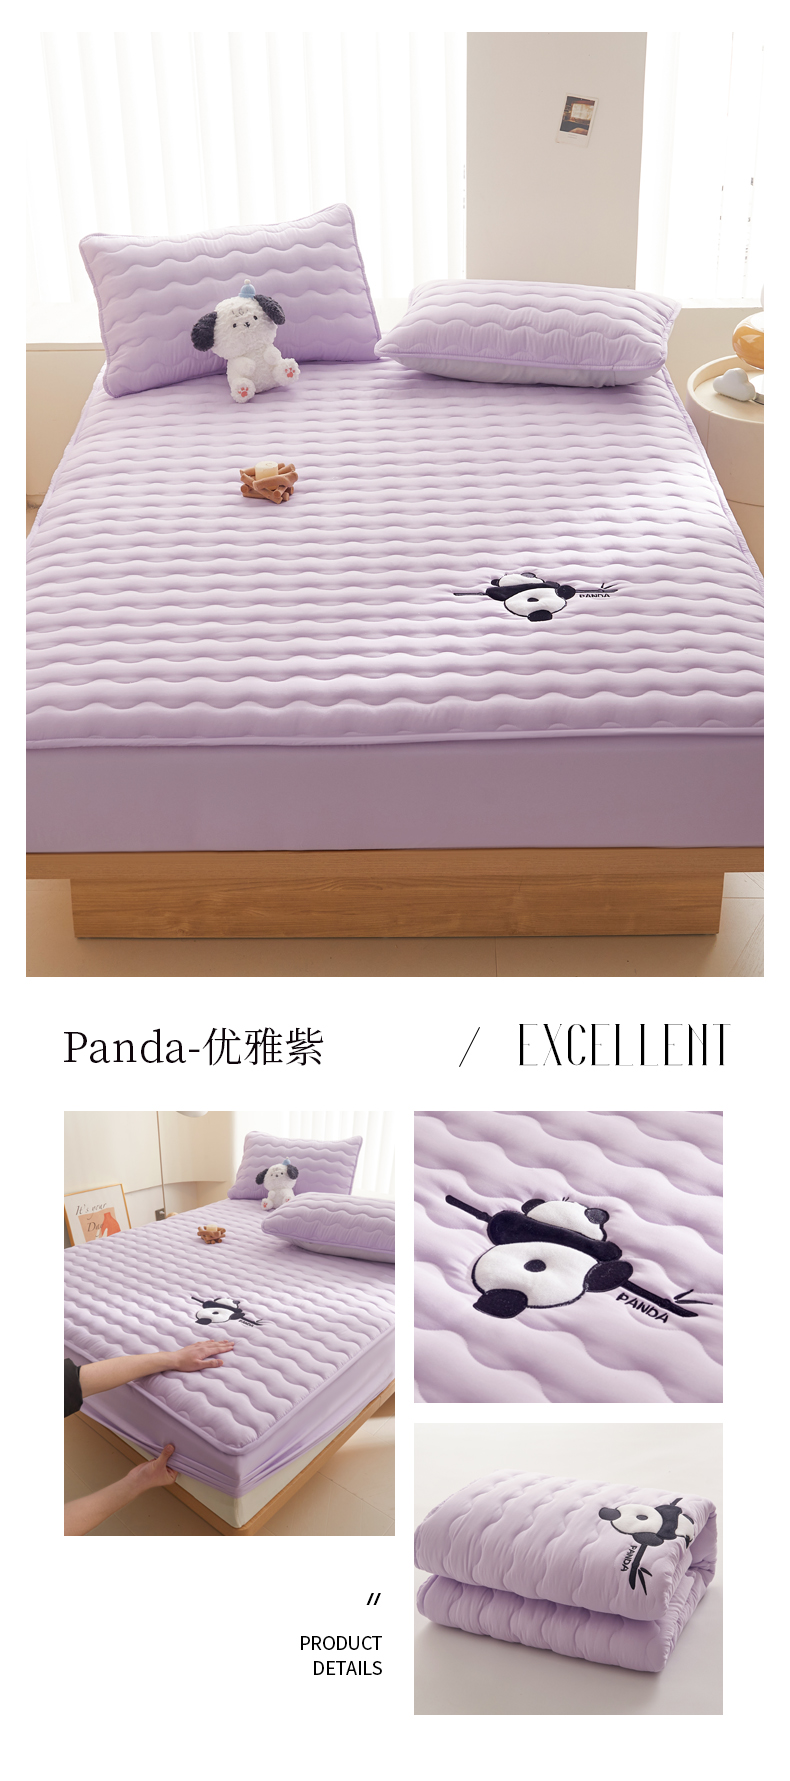 花型拖图 panda-优雅紫.jpg